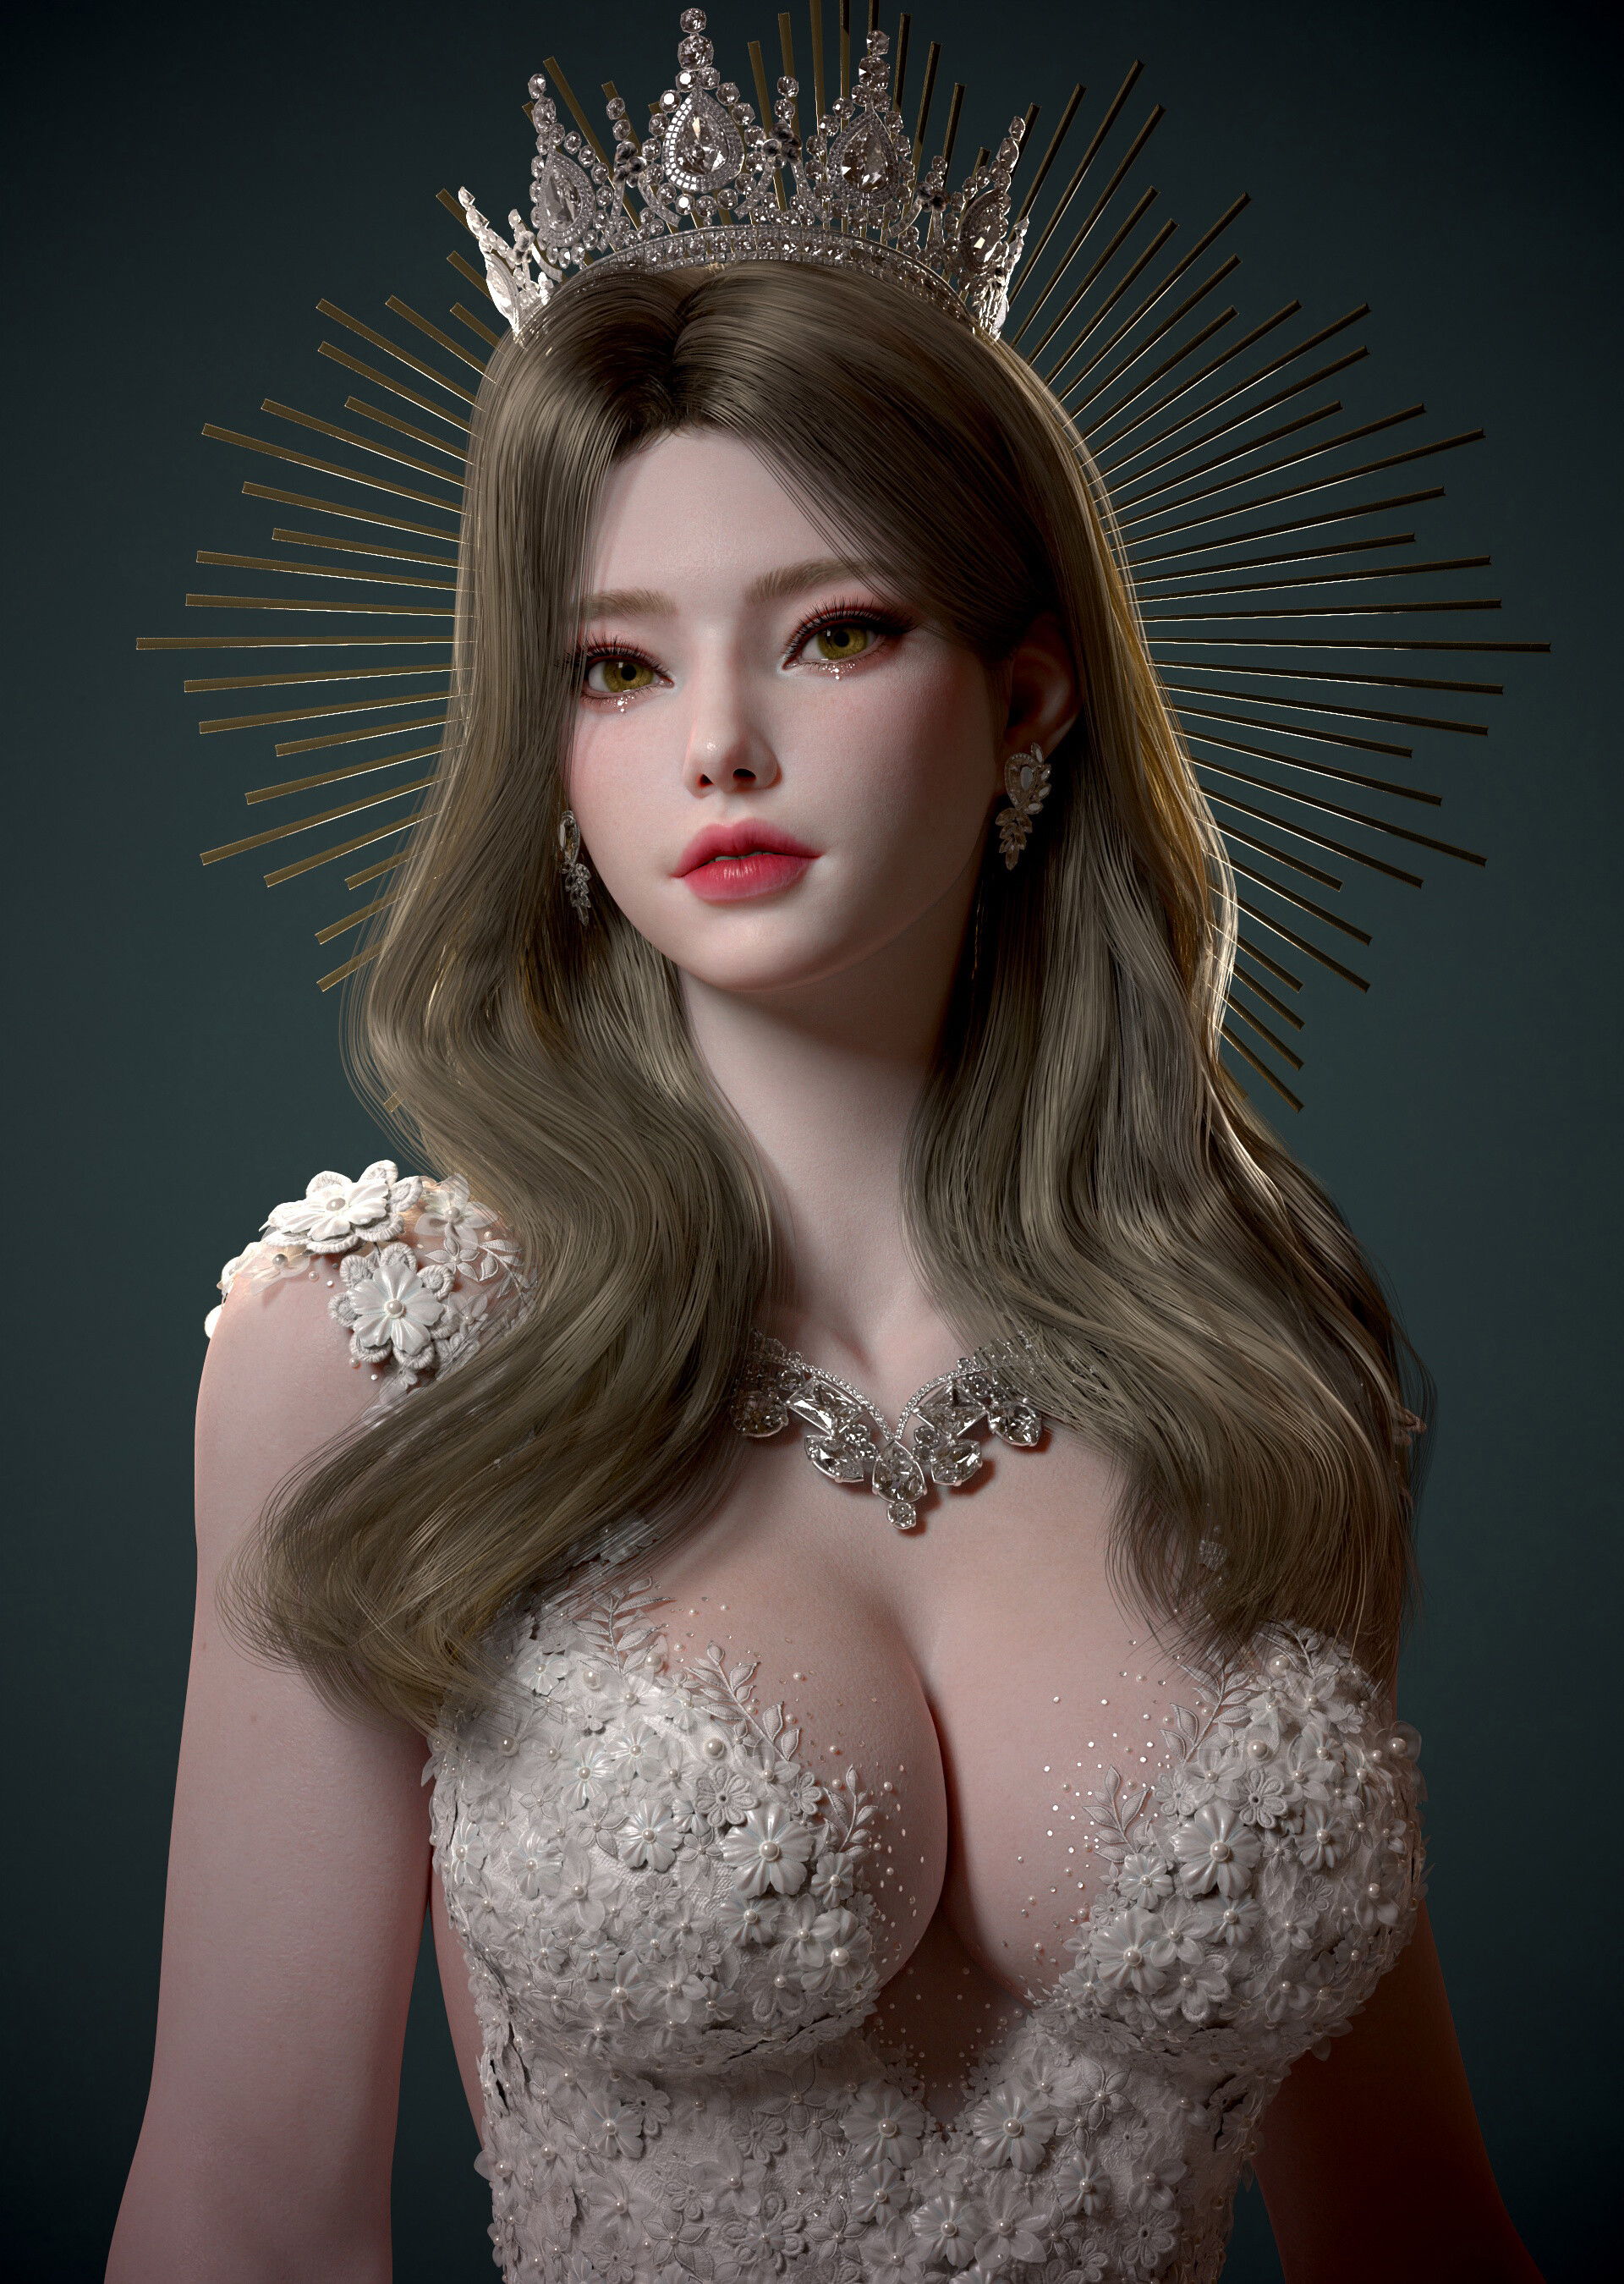 Фото Девушка с длинными волосами с короной на голове, 3d художник sujung